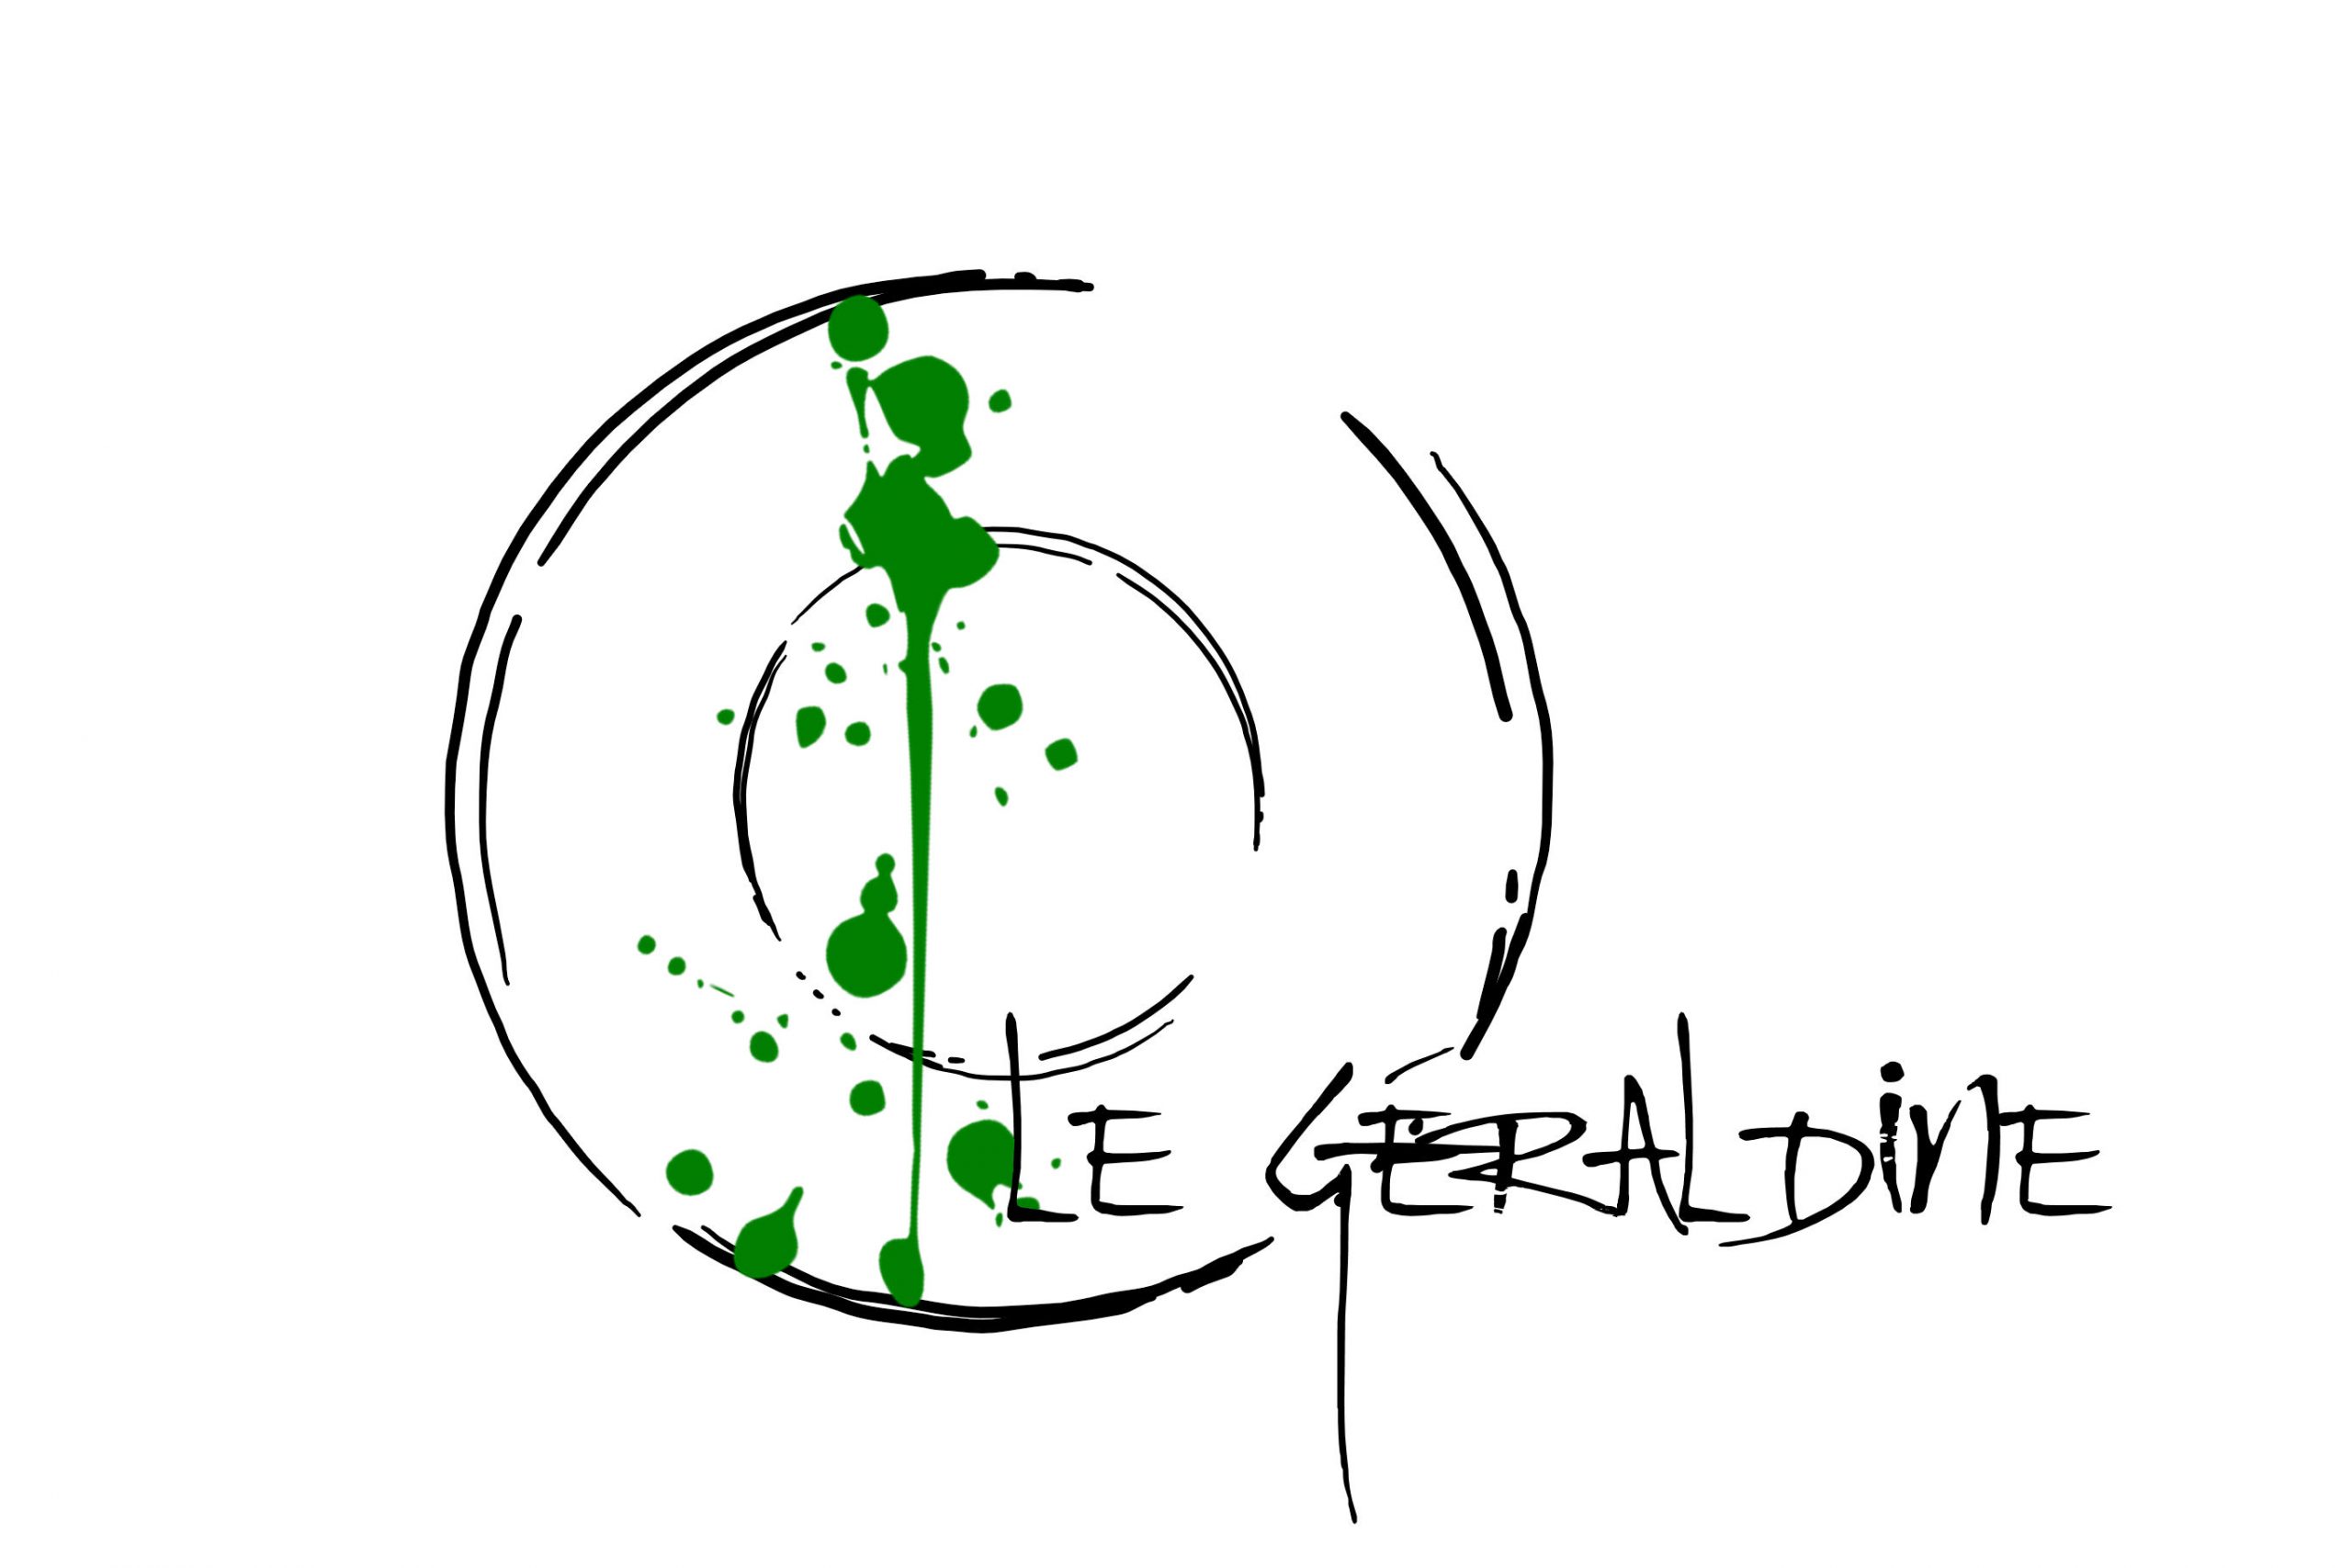 Le Geraldine